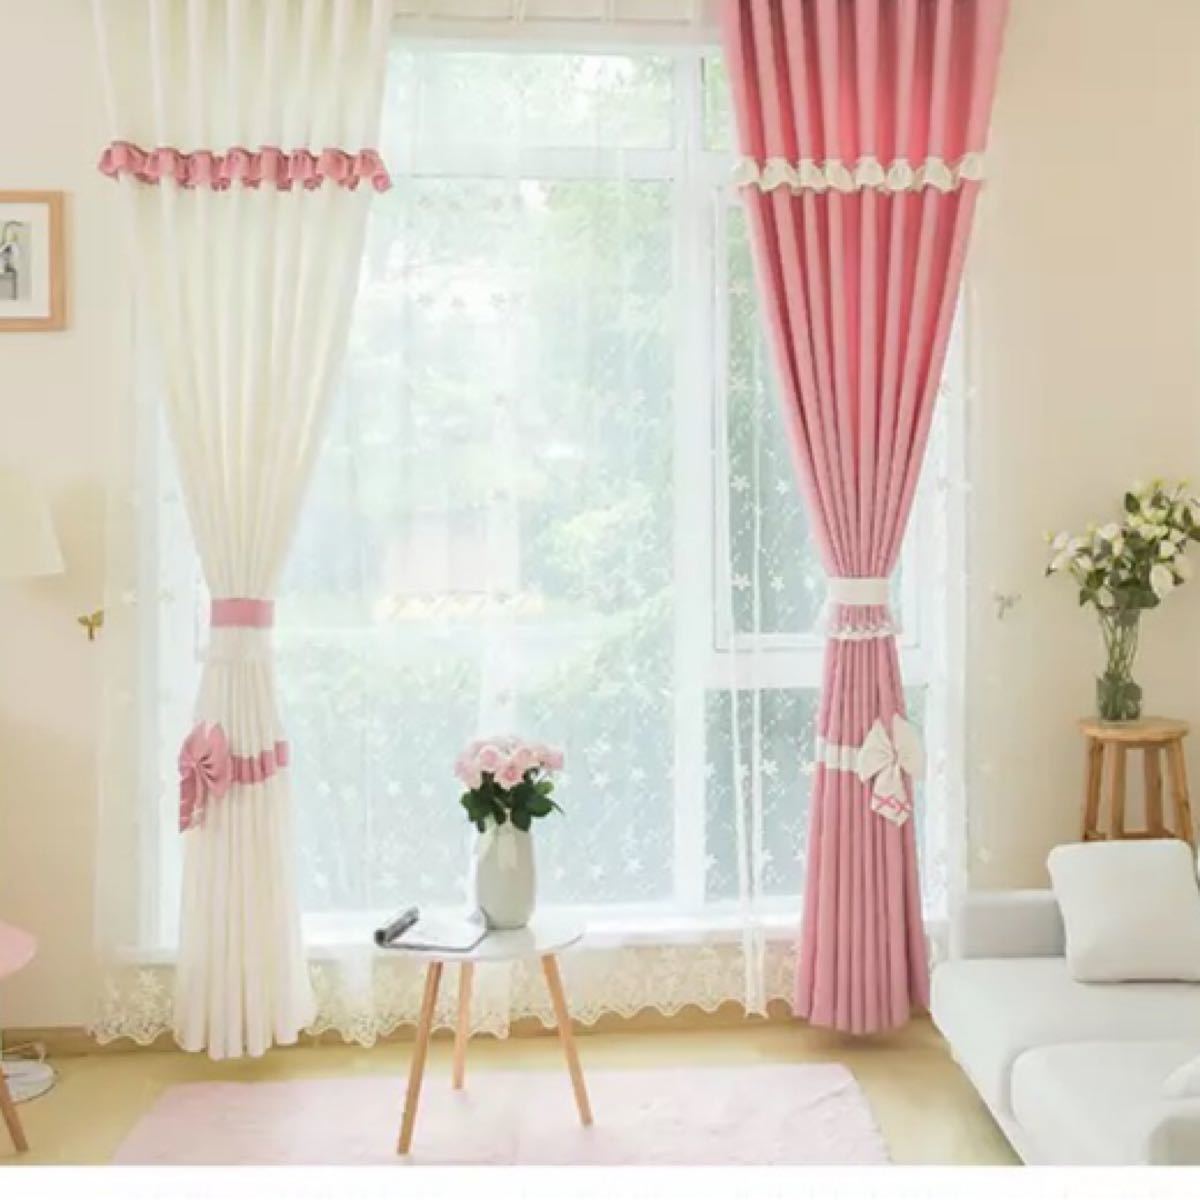 ドレープカーテン 遮光カーテン UVカット 姫系 遮 カーテン 子ども部屋 ピンク 可愛い おしゃれ  1セット 2枚入り 家 